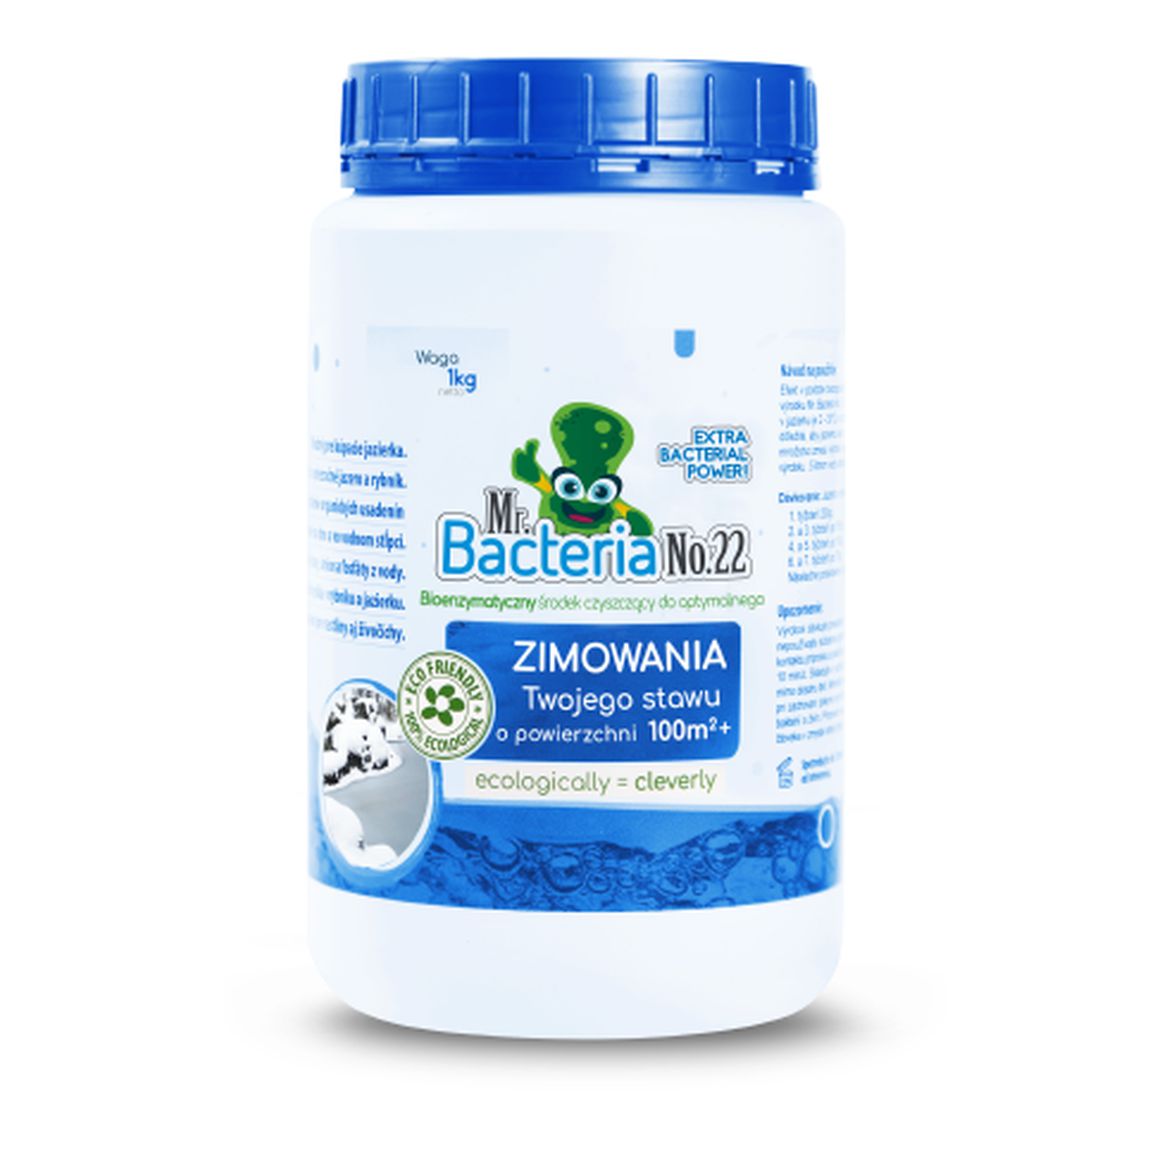 Mr. Bacteria No.22 Bioenzymatyczny środek czyszczący